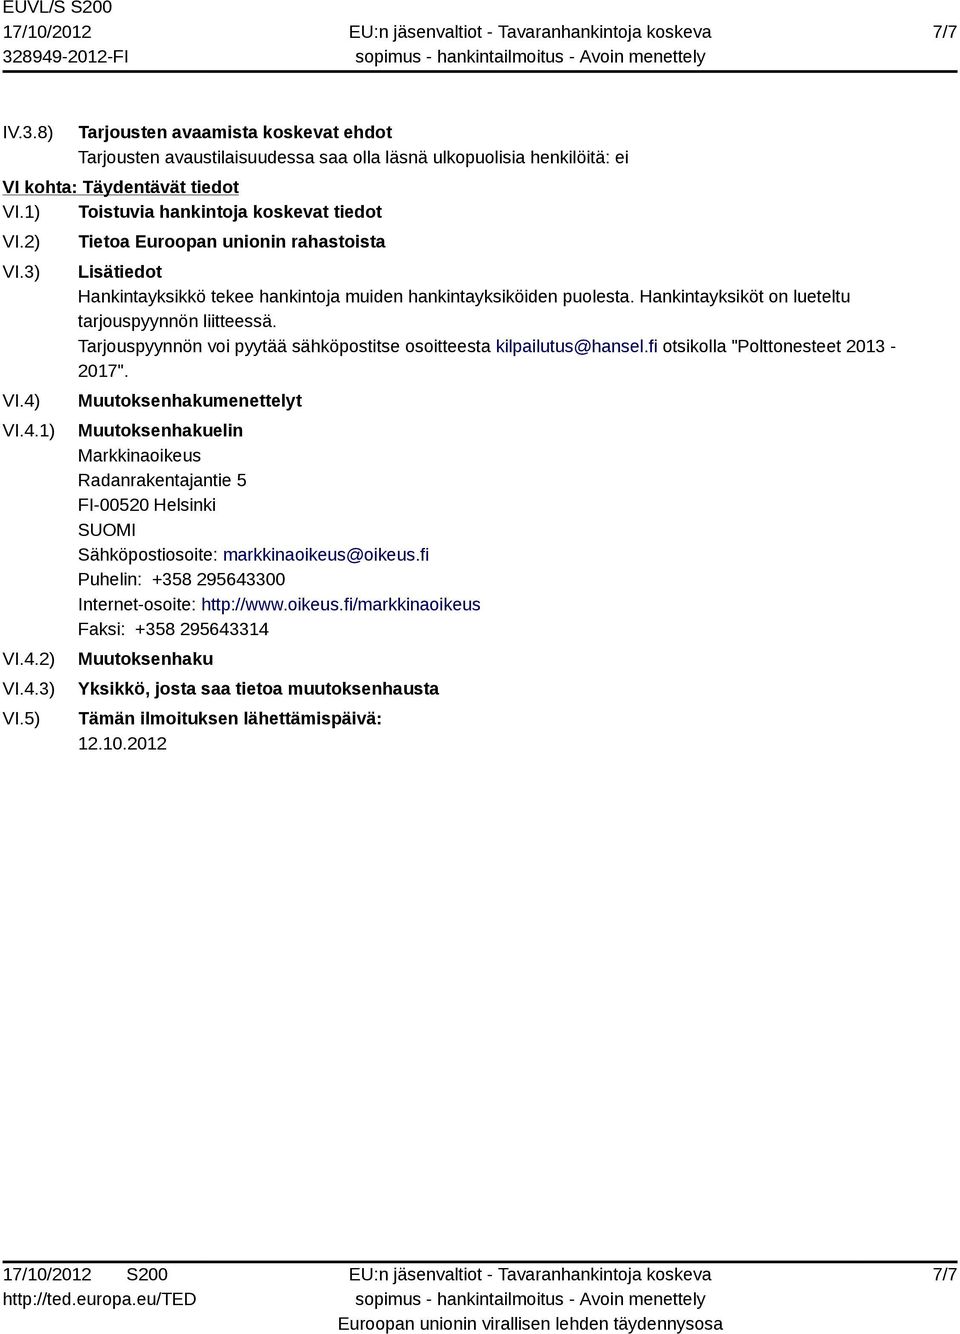 Hankintayksiköt on lueteltu tarjouspyynnön liitteessä. Tarjouspyynnön voi pyytää sähköpostitse osoitteesta kilpailutus@hansel.fi otsikolla "Polttonesteet 2013-2017".